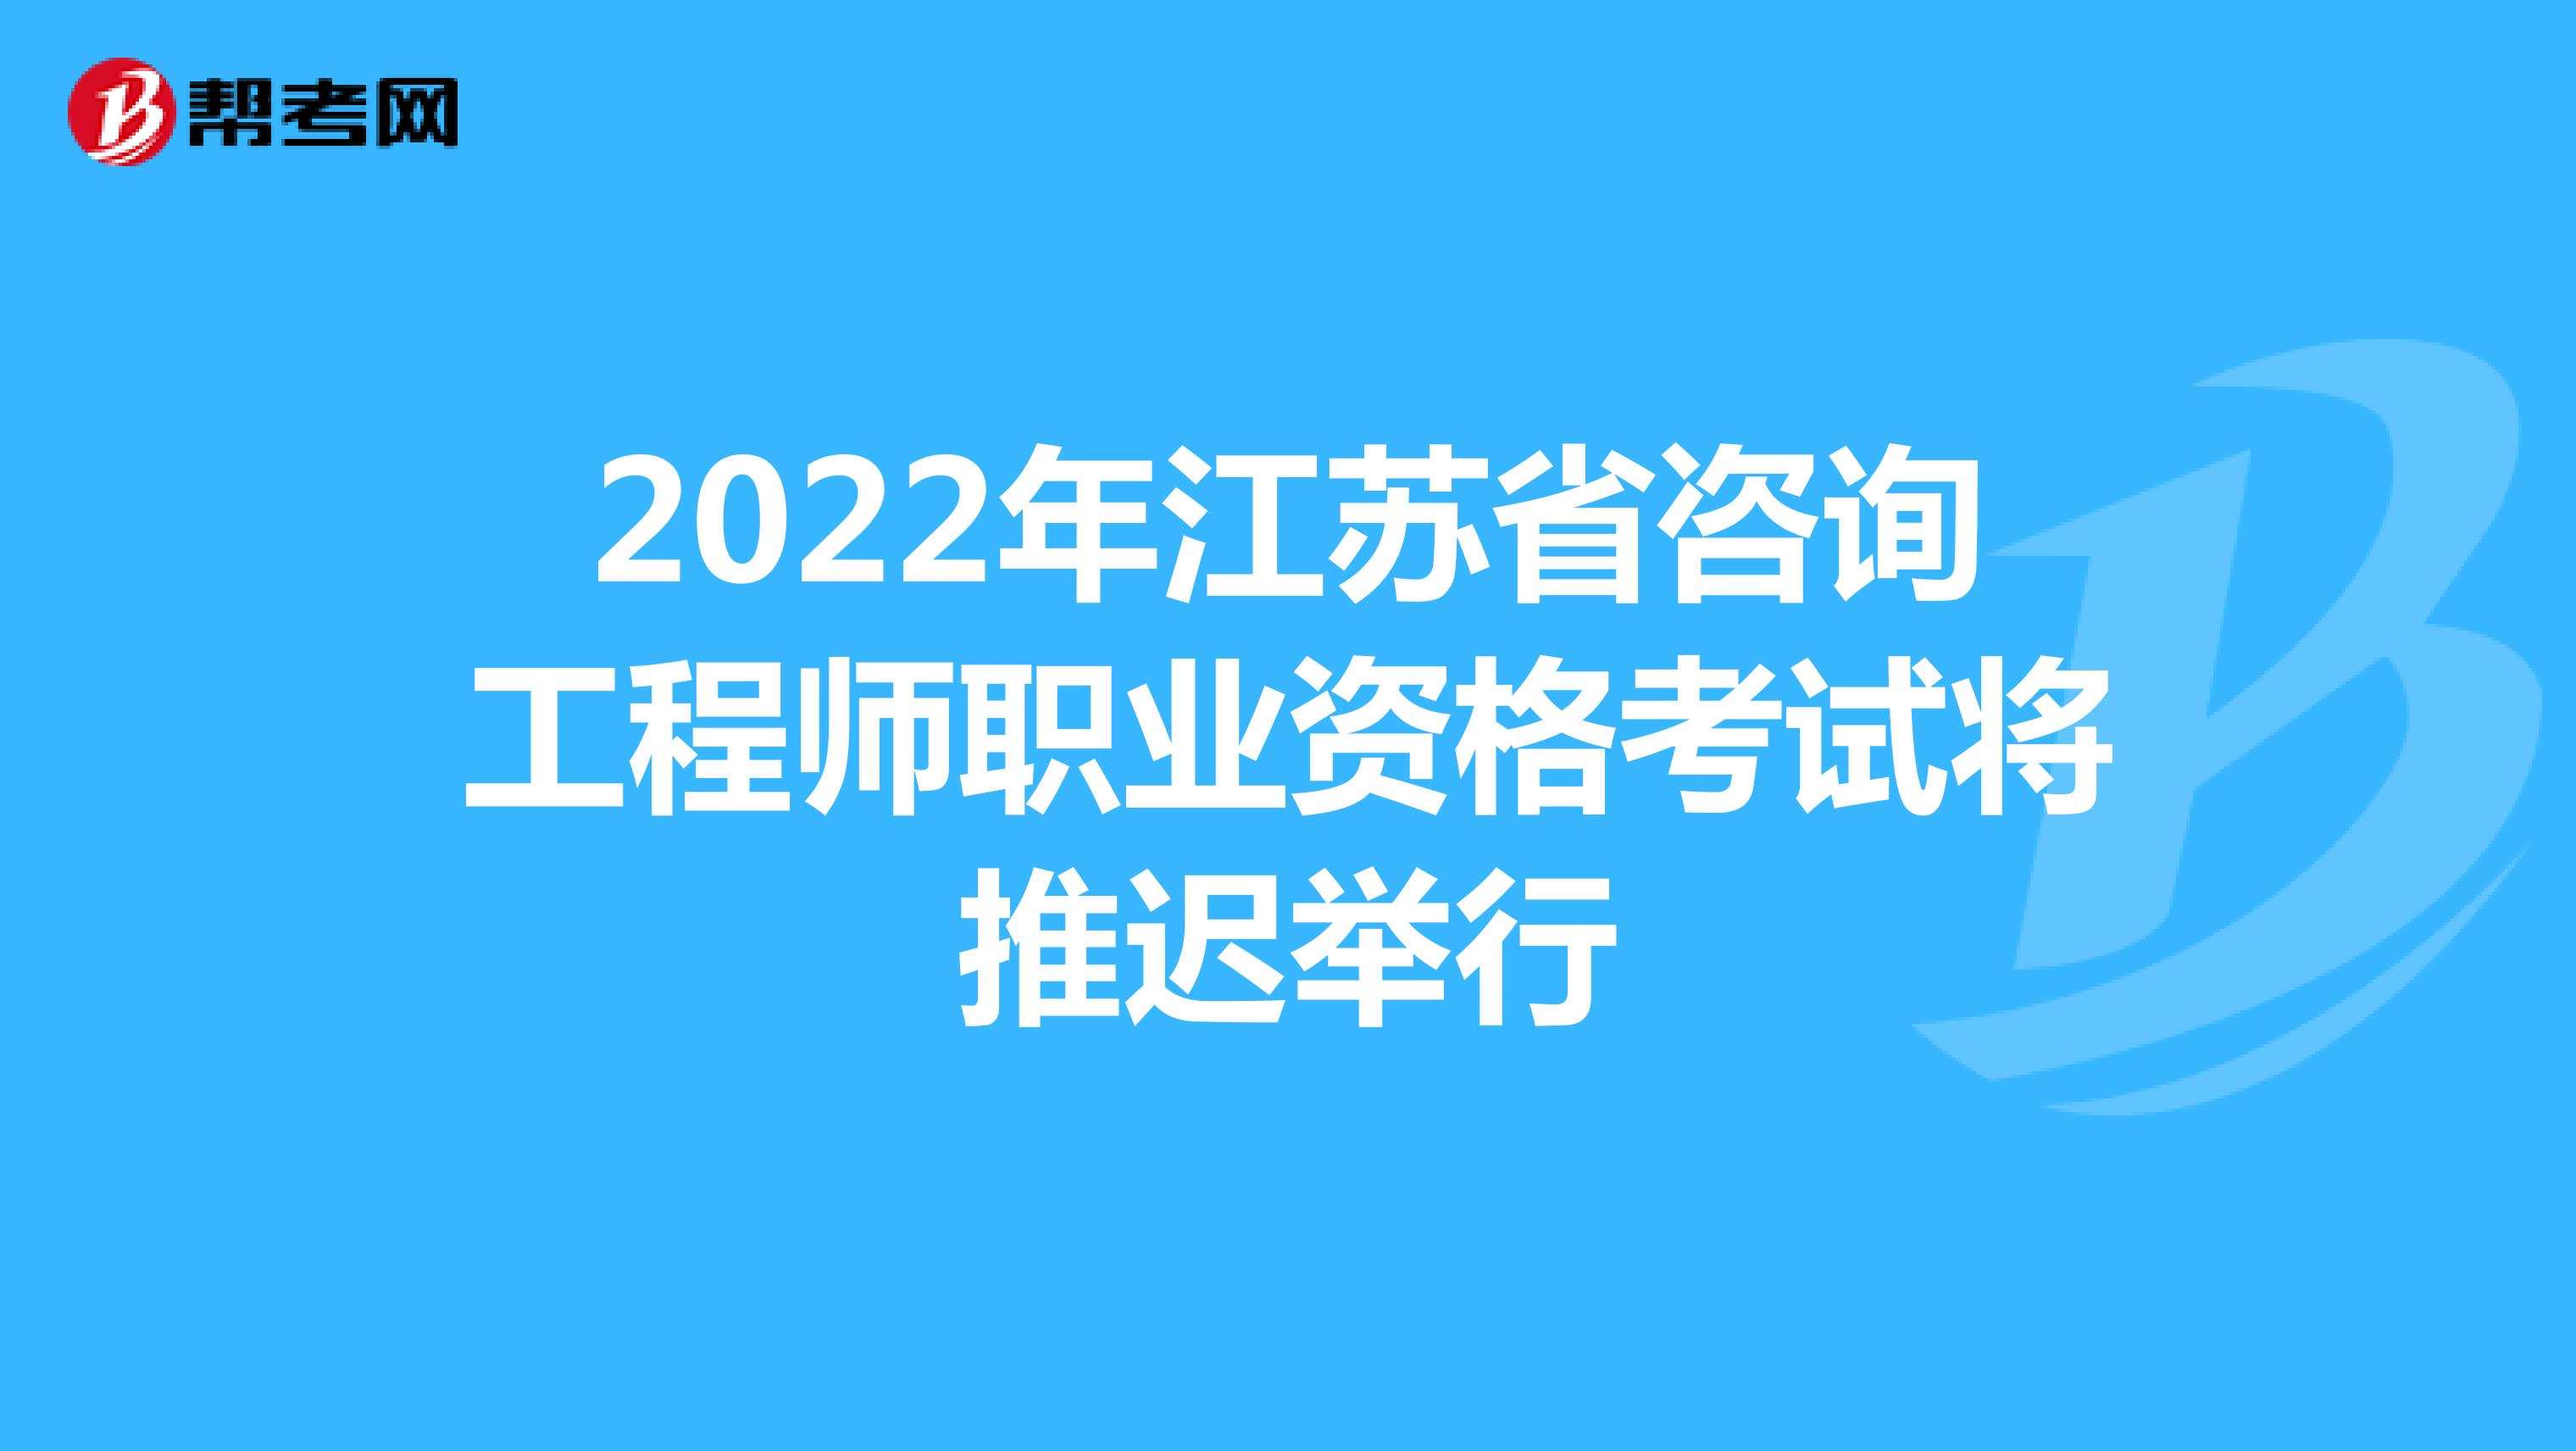 2022年江苏省咨询工程师职业资格考试将推迟举行